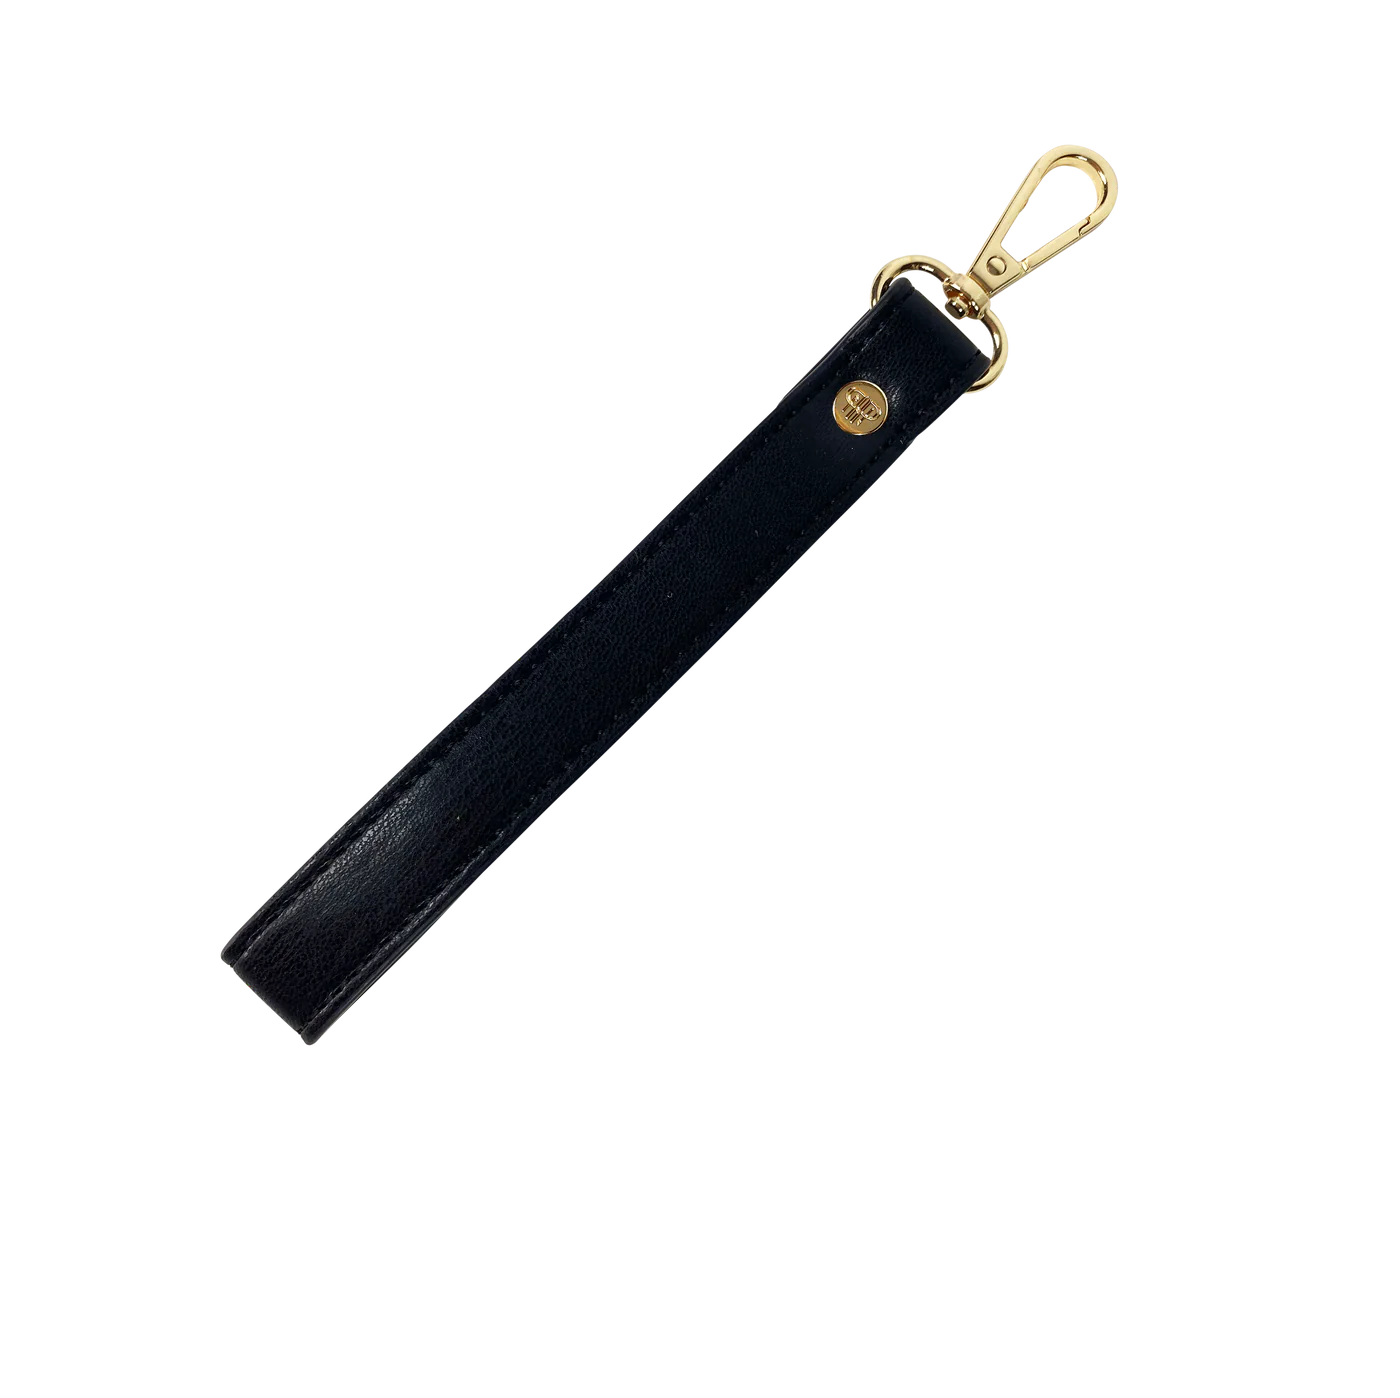 Pursen wristlet strap key chain black onyx